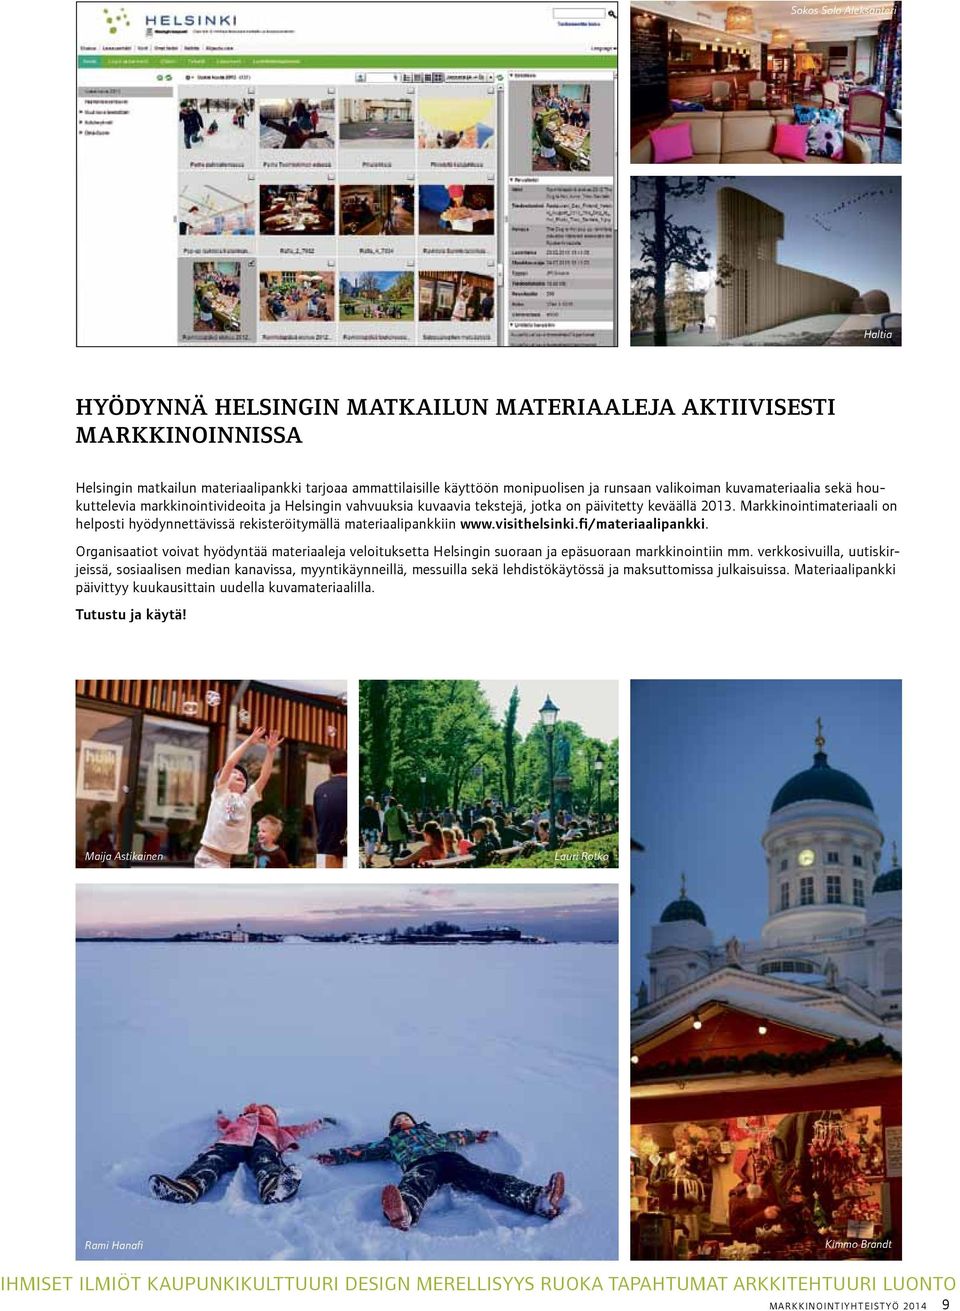 Markkinointimateriaali on helposti hyödynnettävissä rekisteröitymällä materiaalipankkiin www.visithelsinki.fi/materiaalipankki.